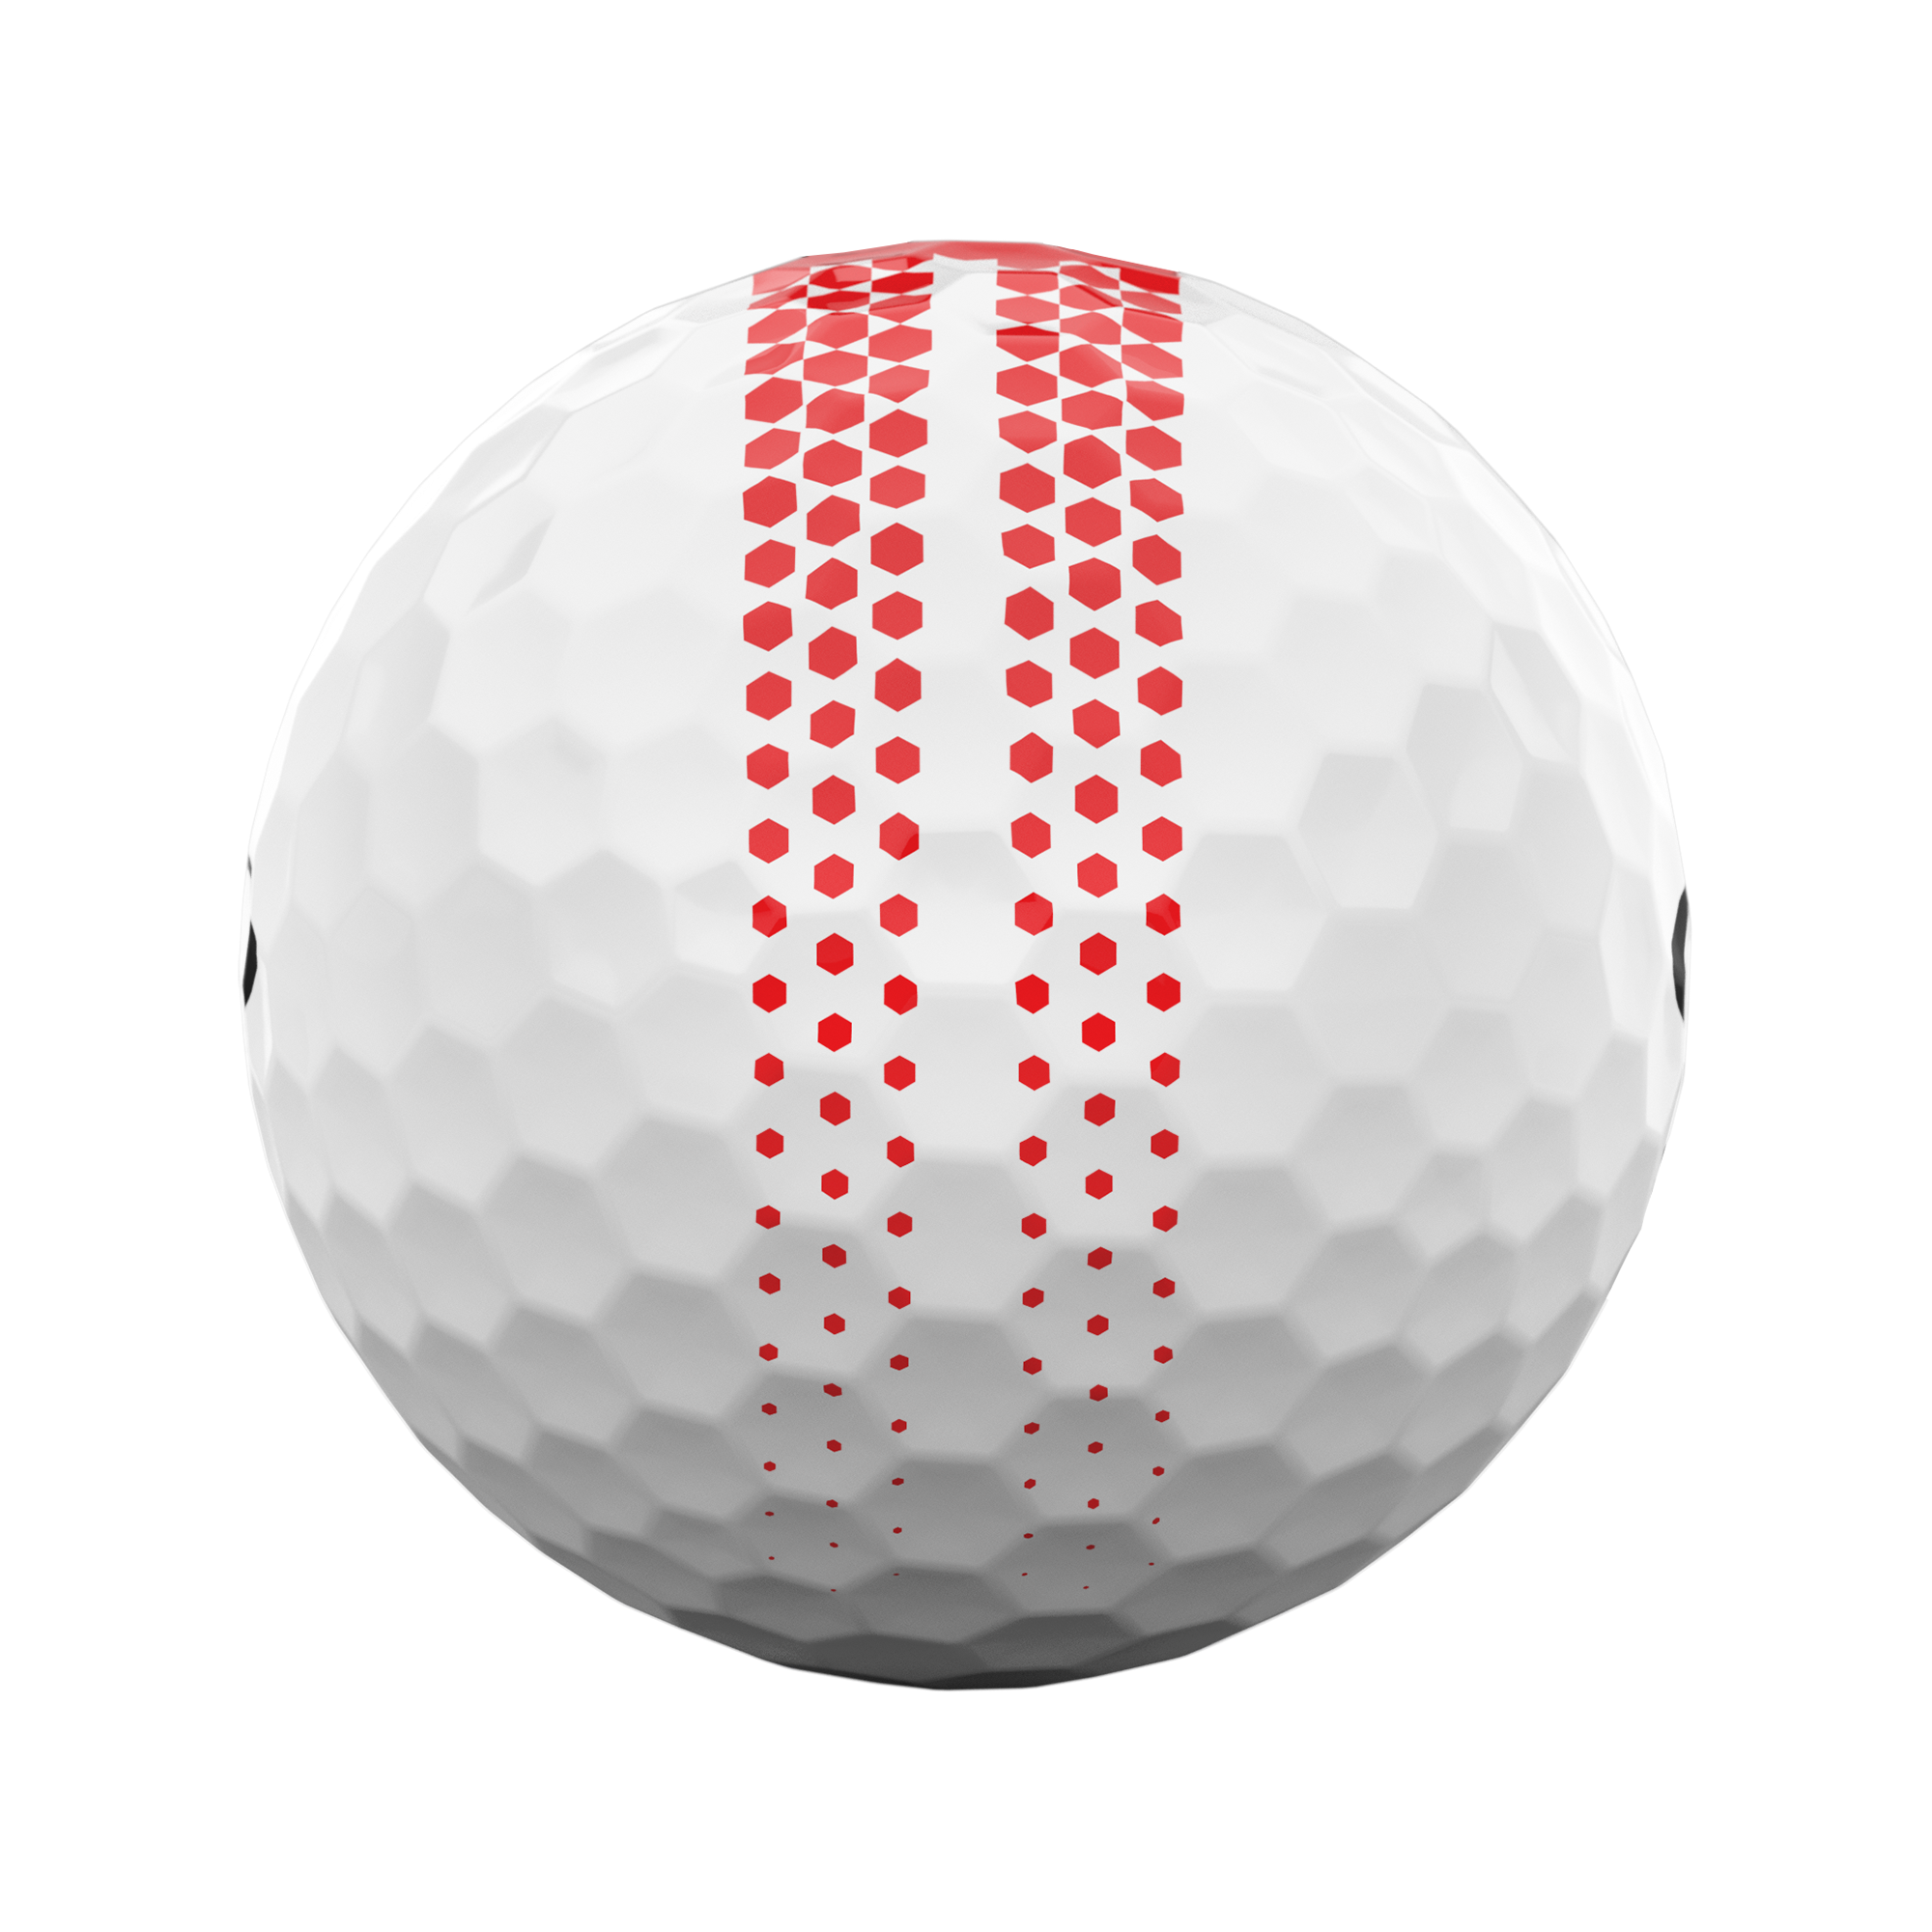 ERC Soft 360 Fade 2024 Golf Balls